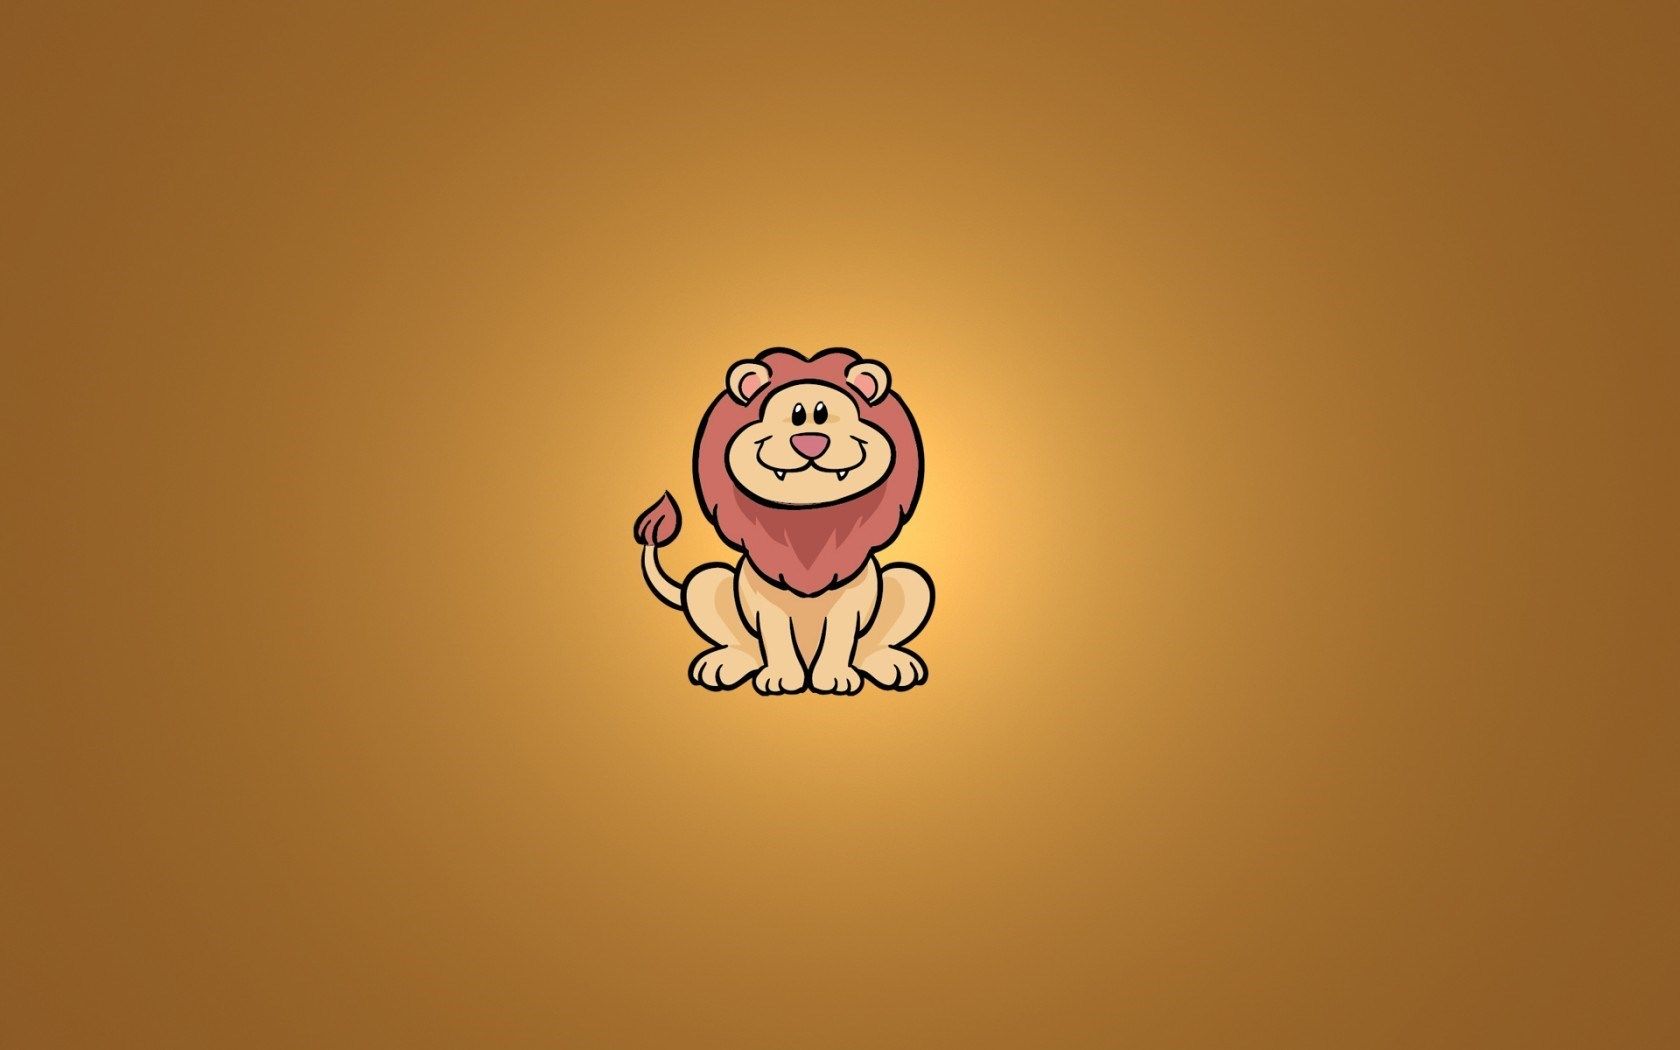 Lion Sitting Smile Minimalism Cartoon wallpaperx1050